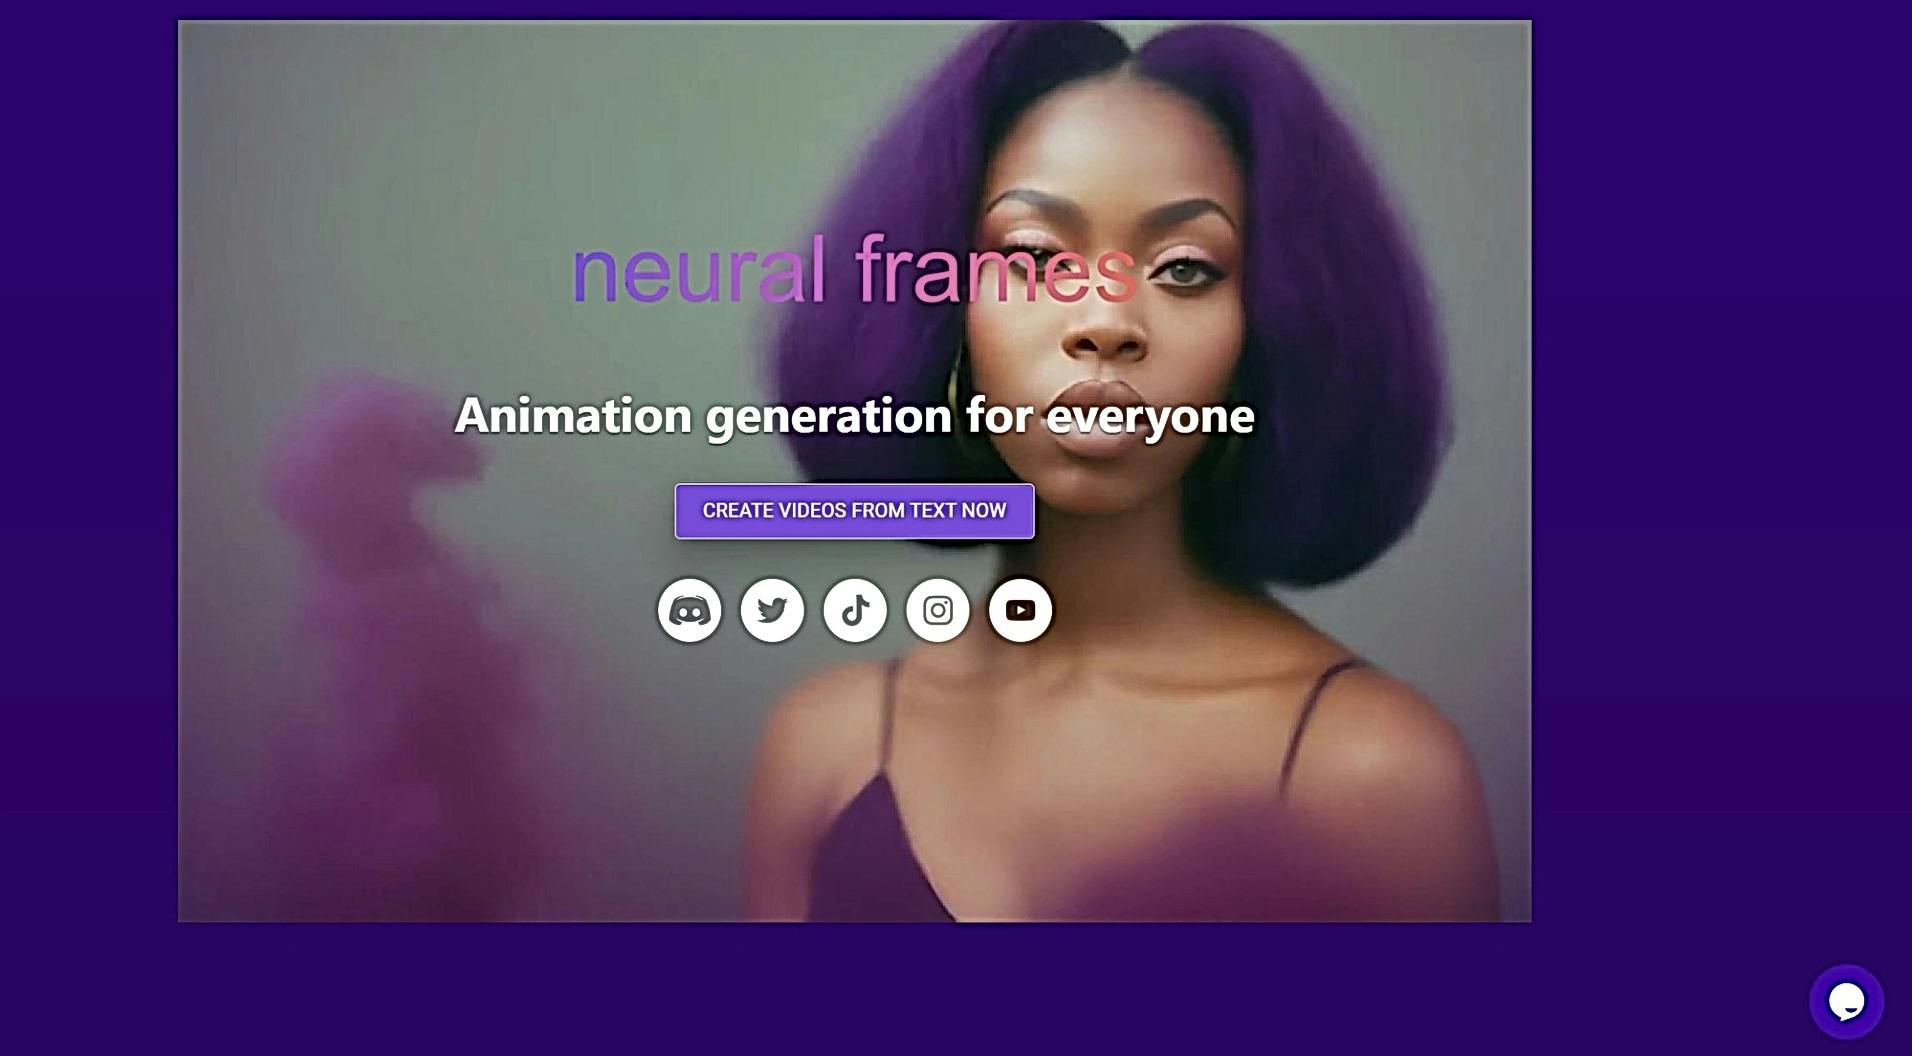 Neural frames featured